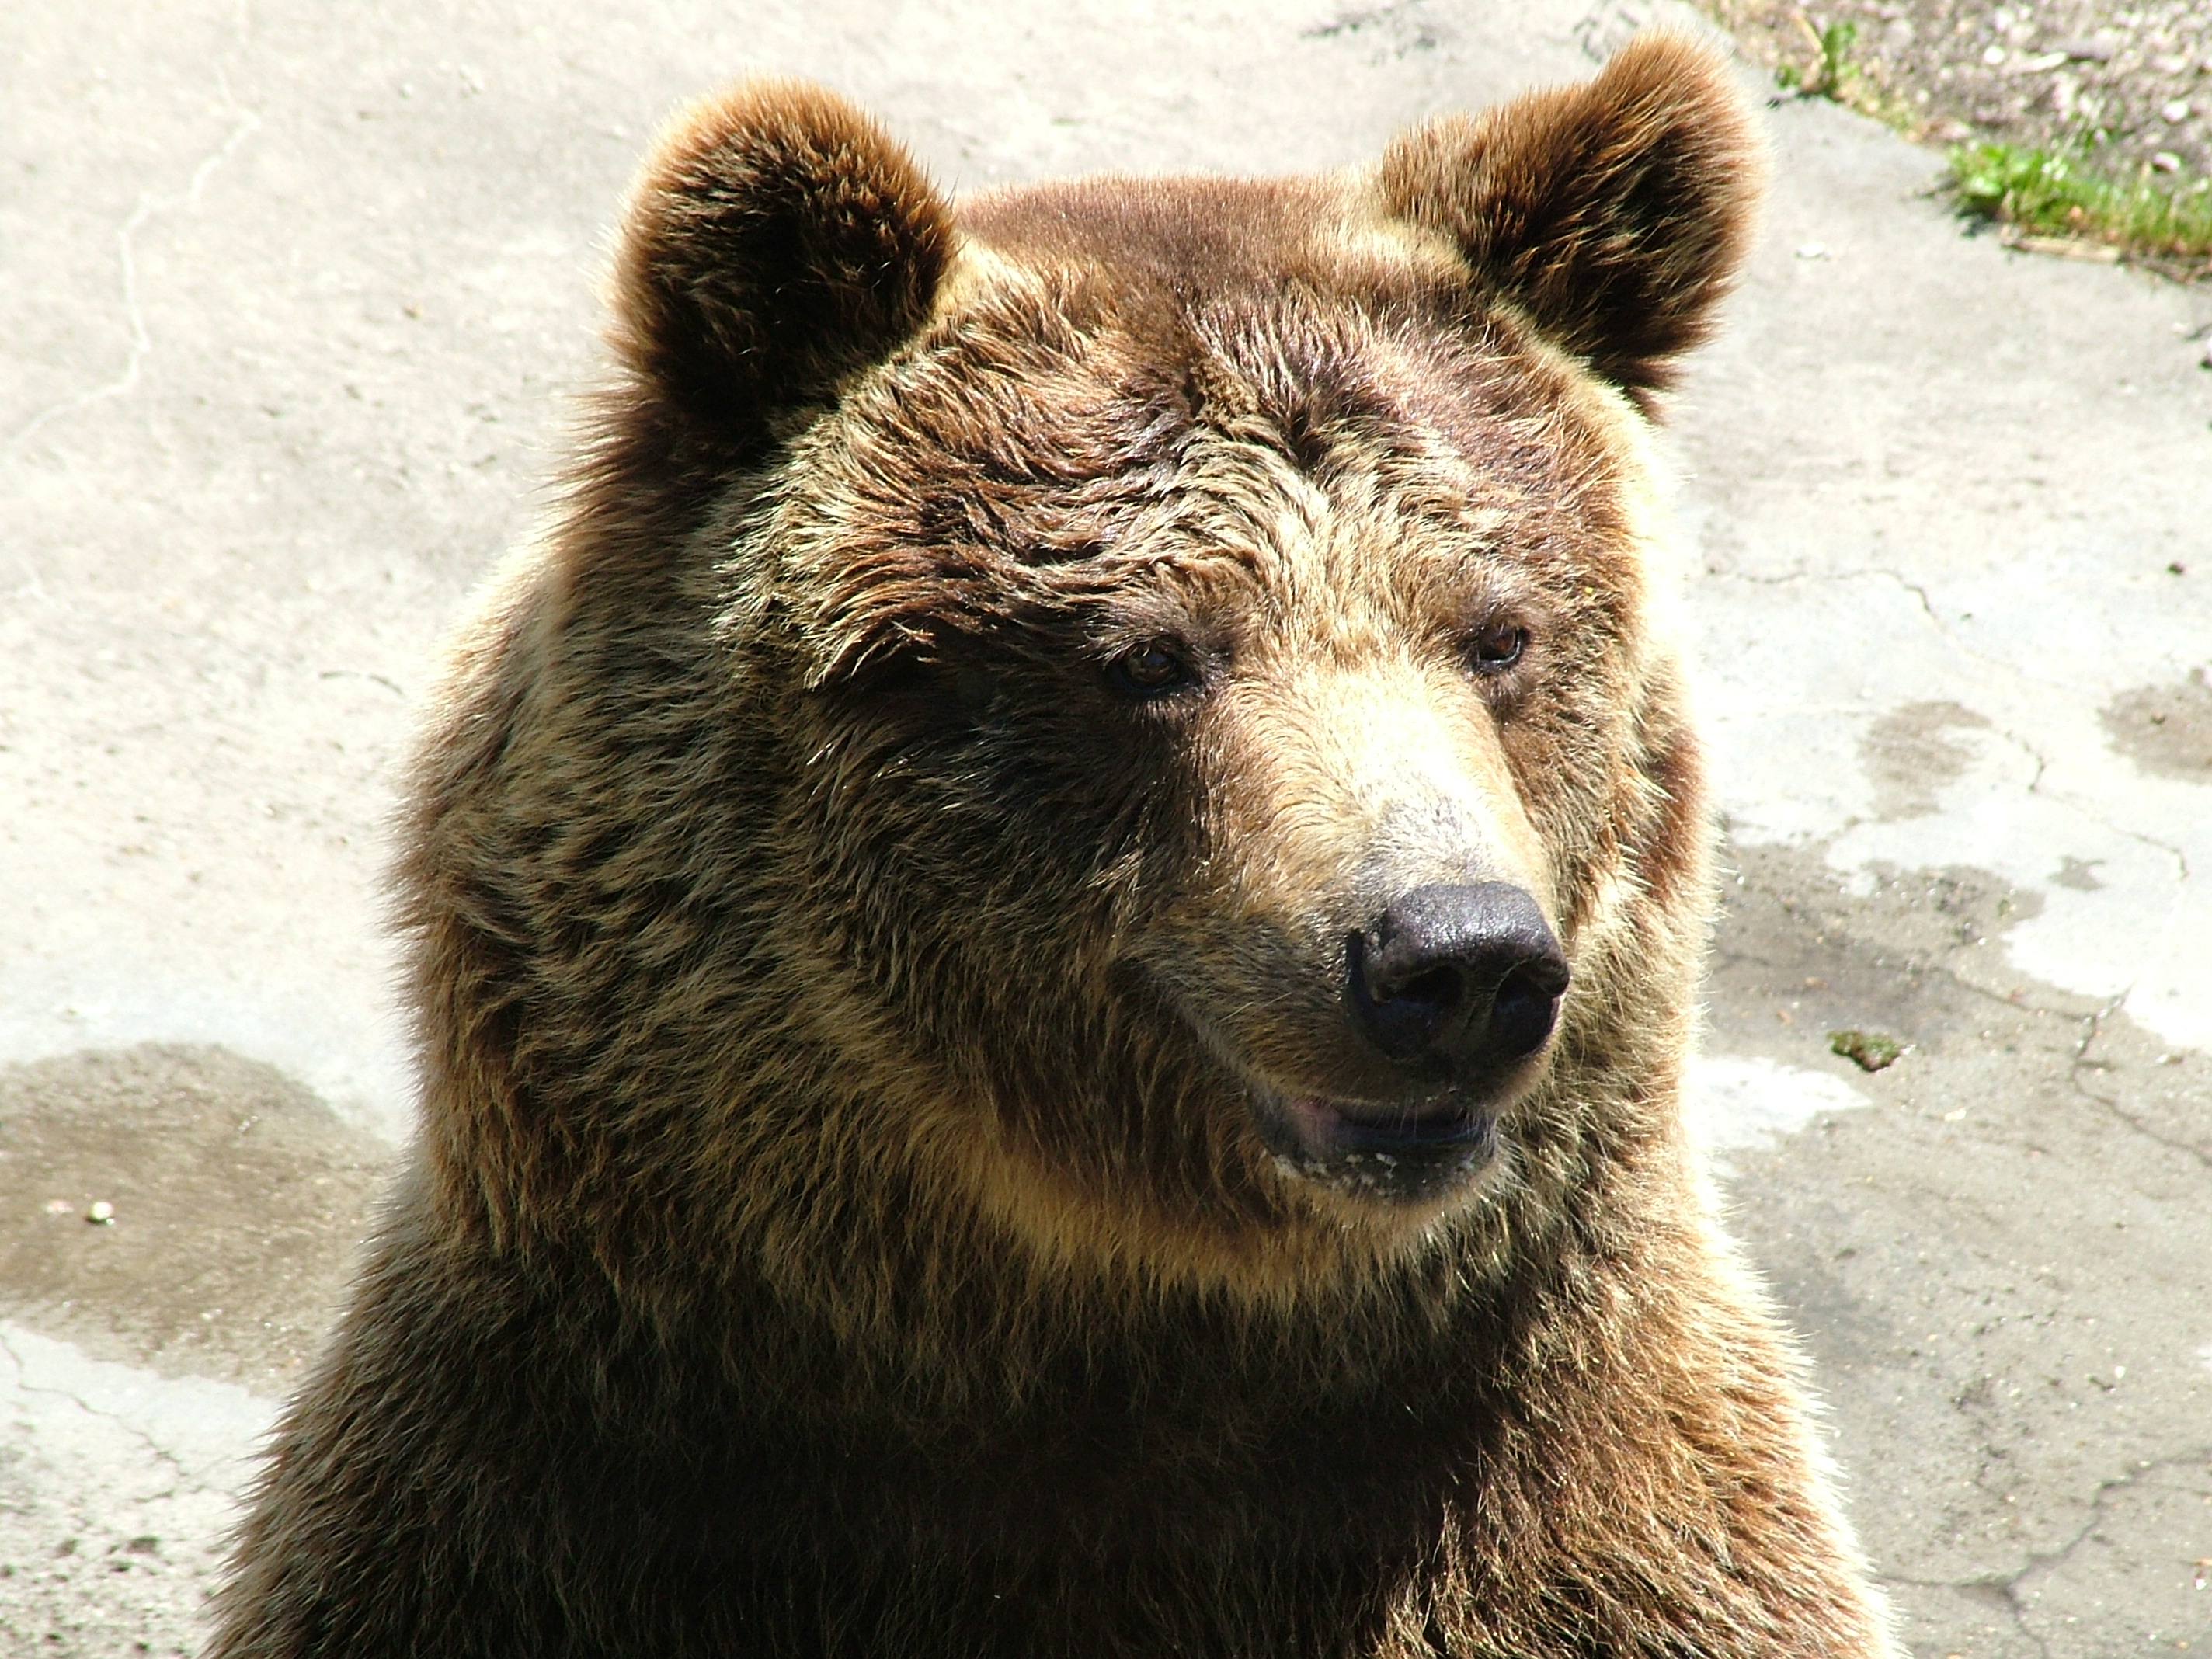 Halottnak tettetve magát könnyű sérüléssel megúszta egy medve támadását egy osztrák földműves